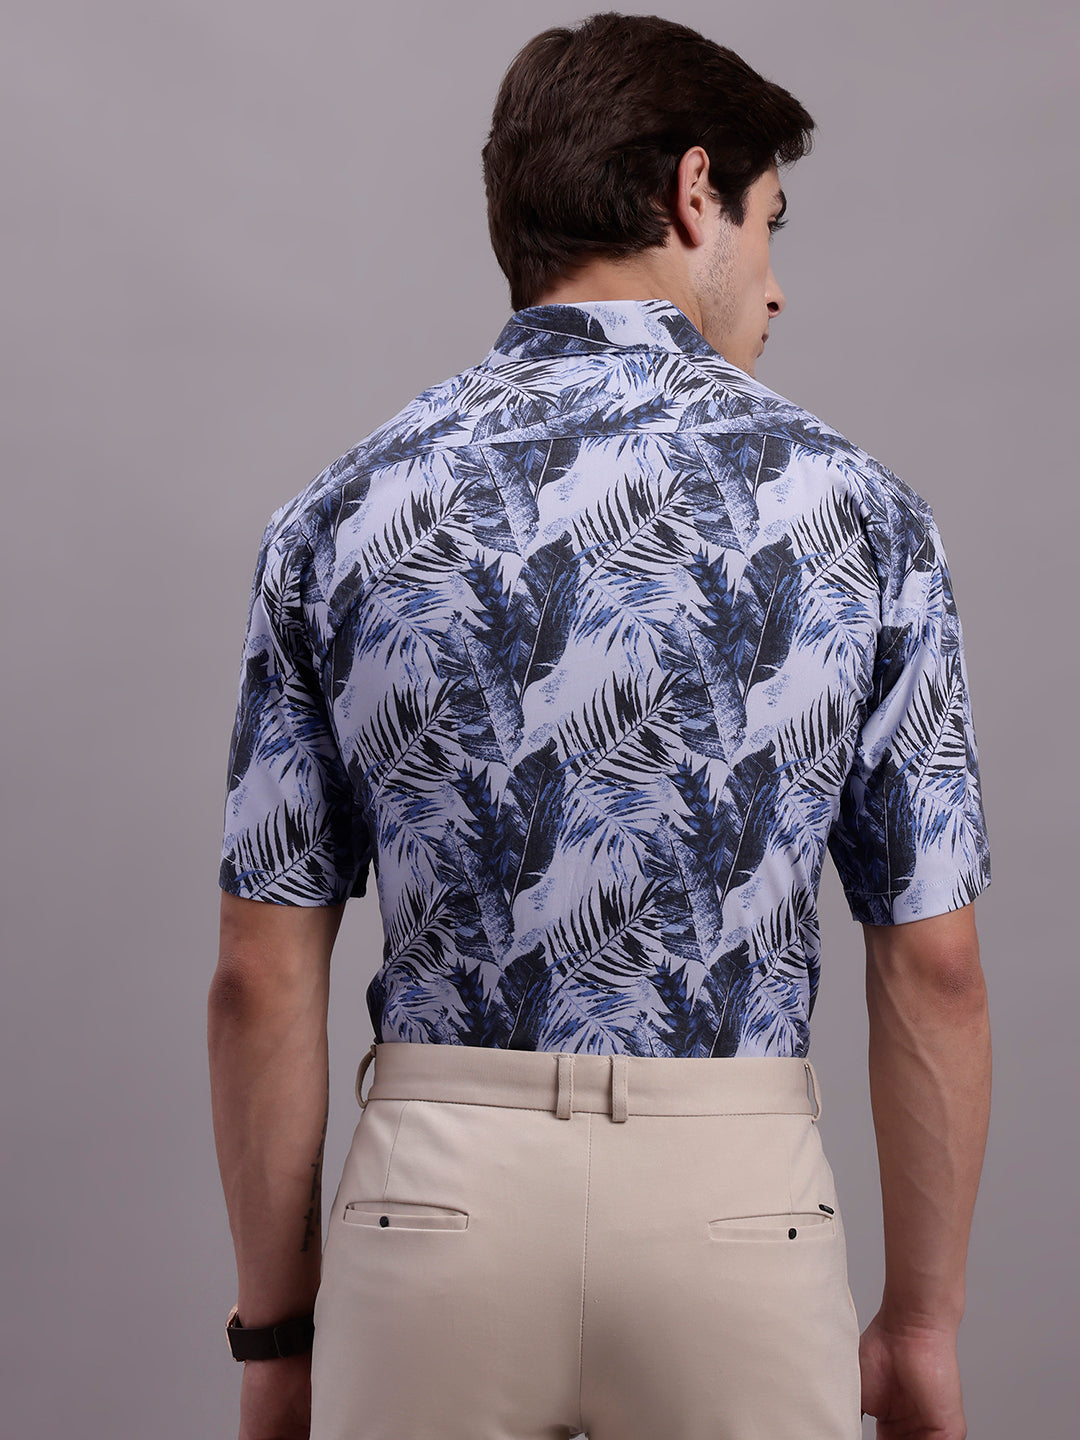 Men's Floral Printed Formal Shirt ( SF 885 Grey )